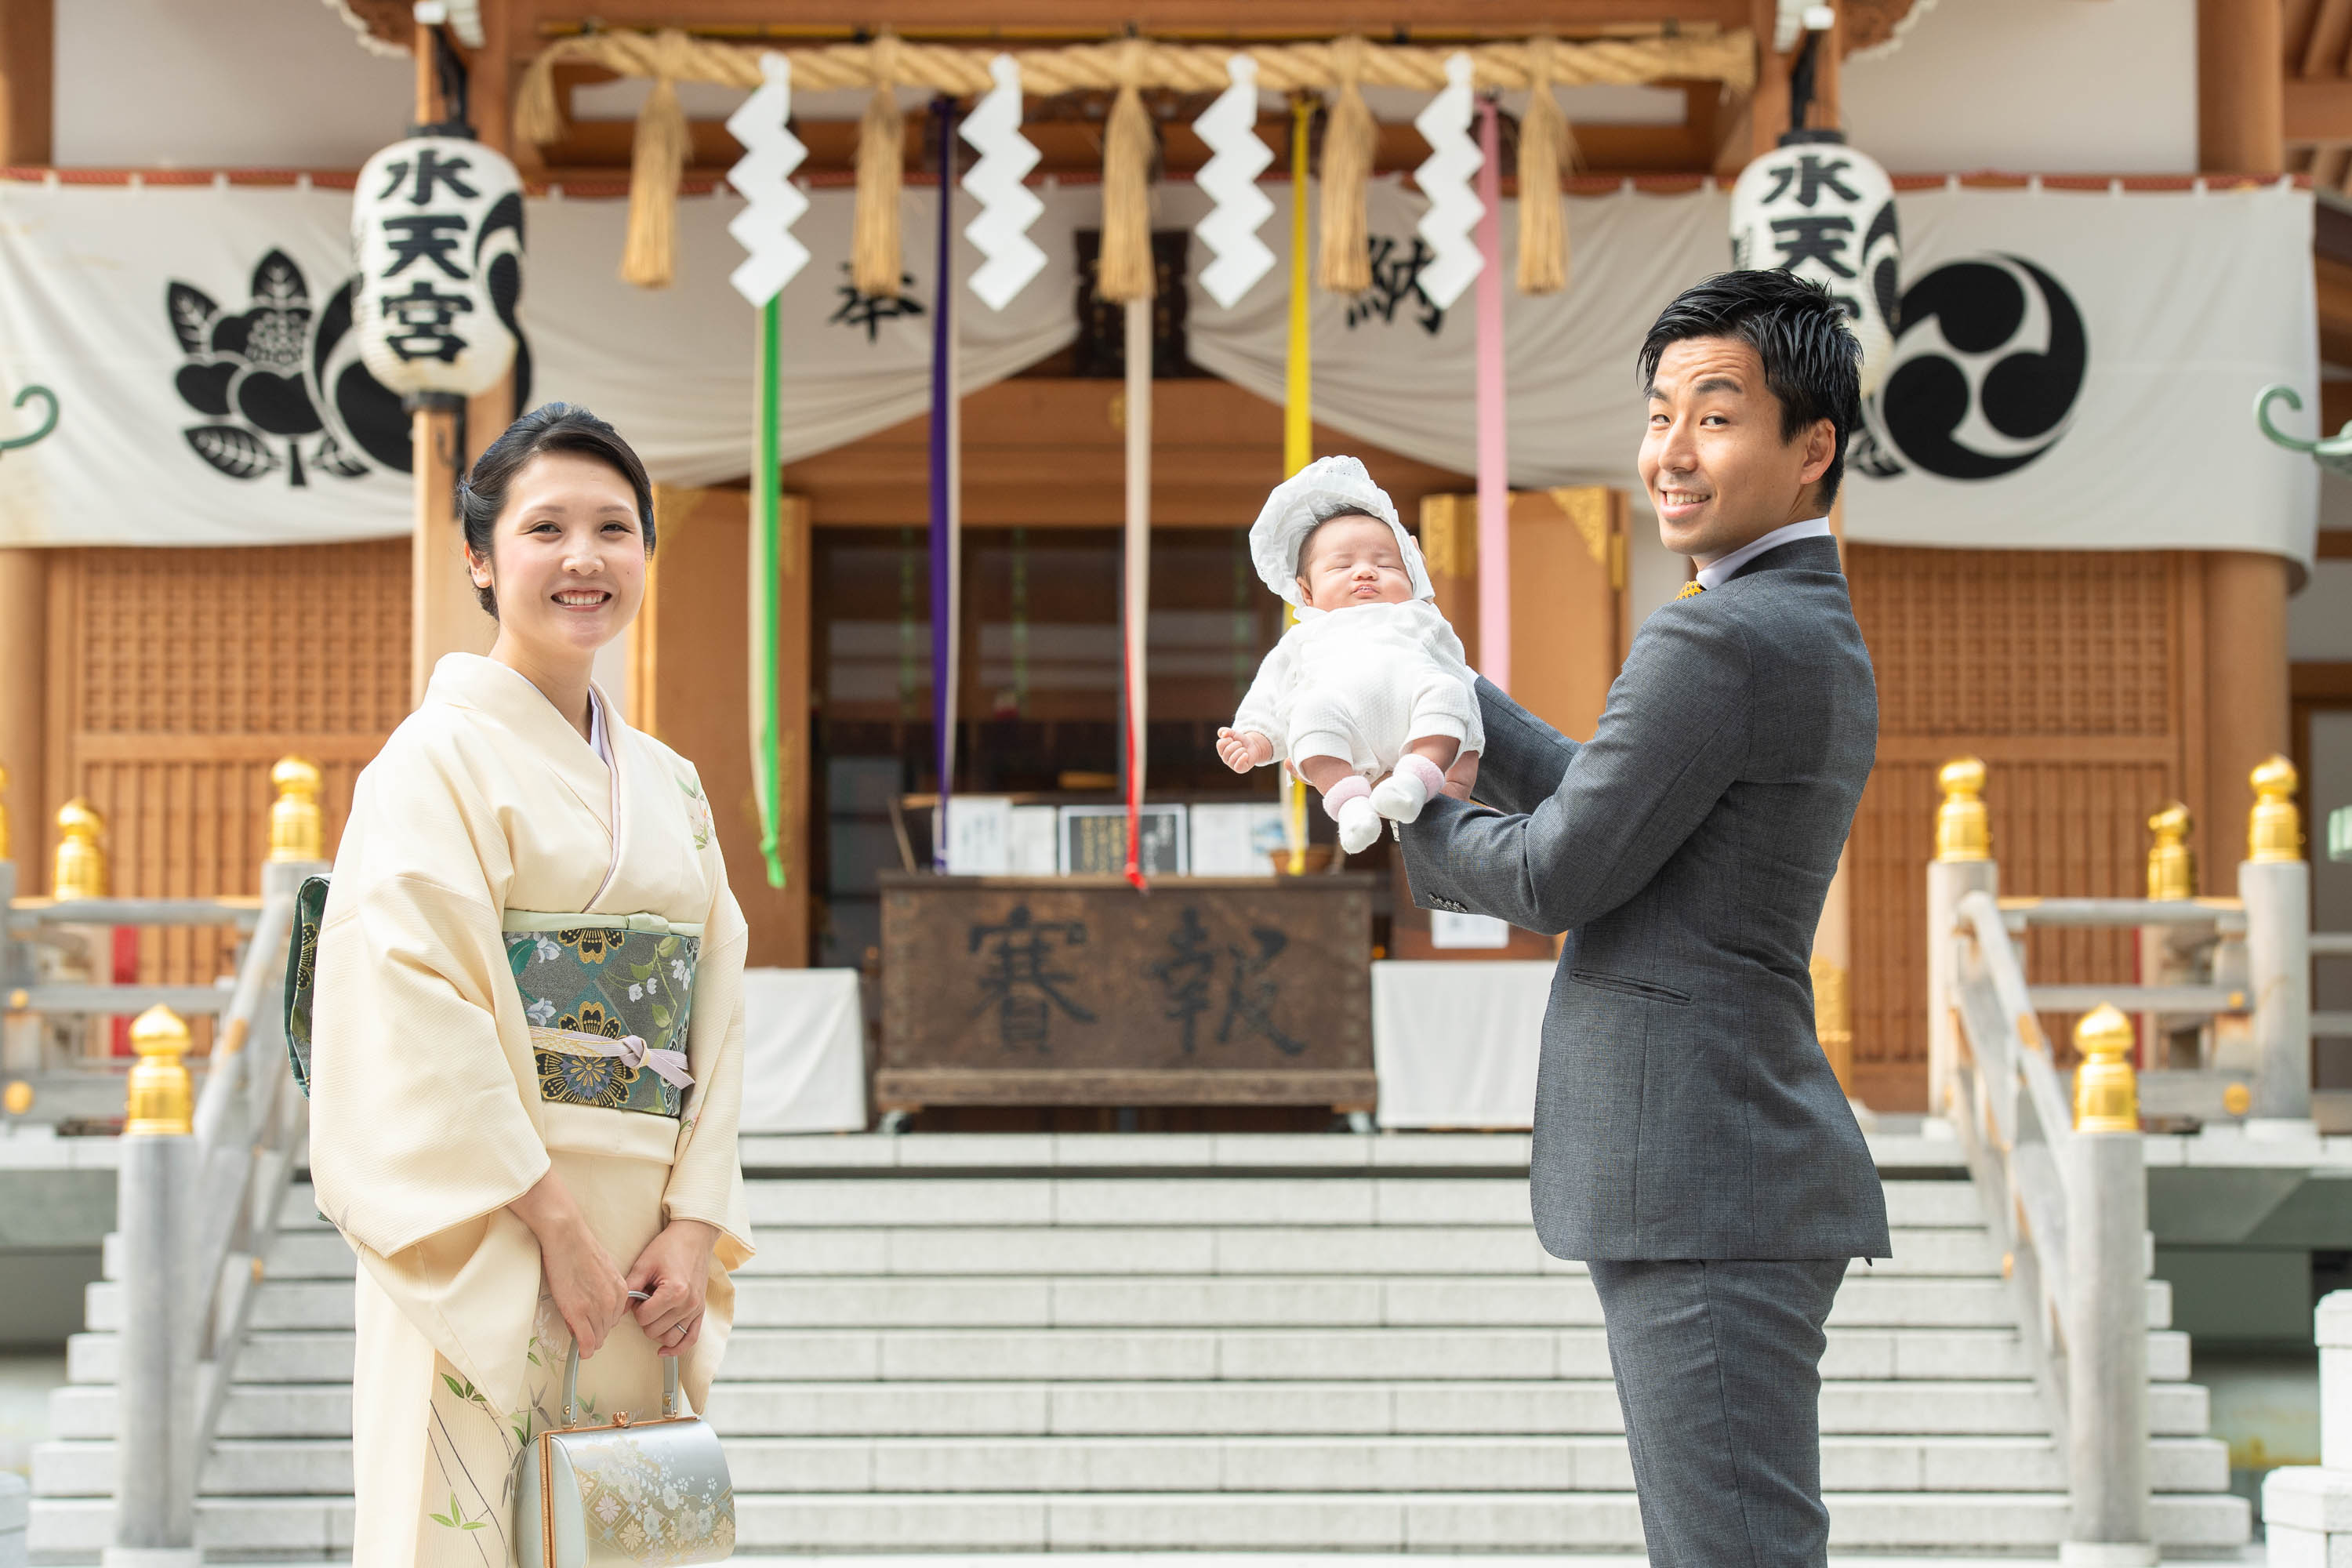 赤ちゃんを手で持ち上げ抱くスーツ姿の男性と横に立つ和装の女性